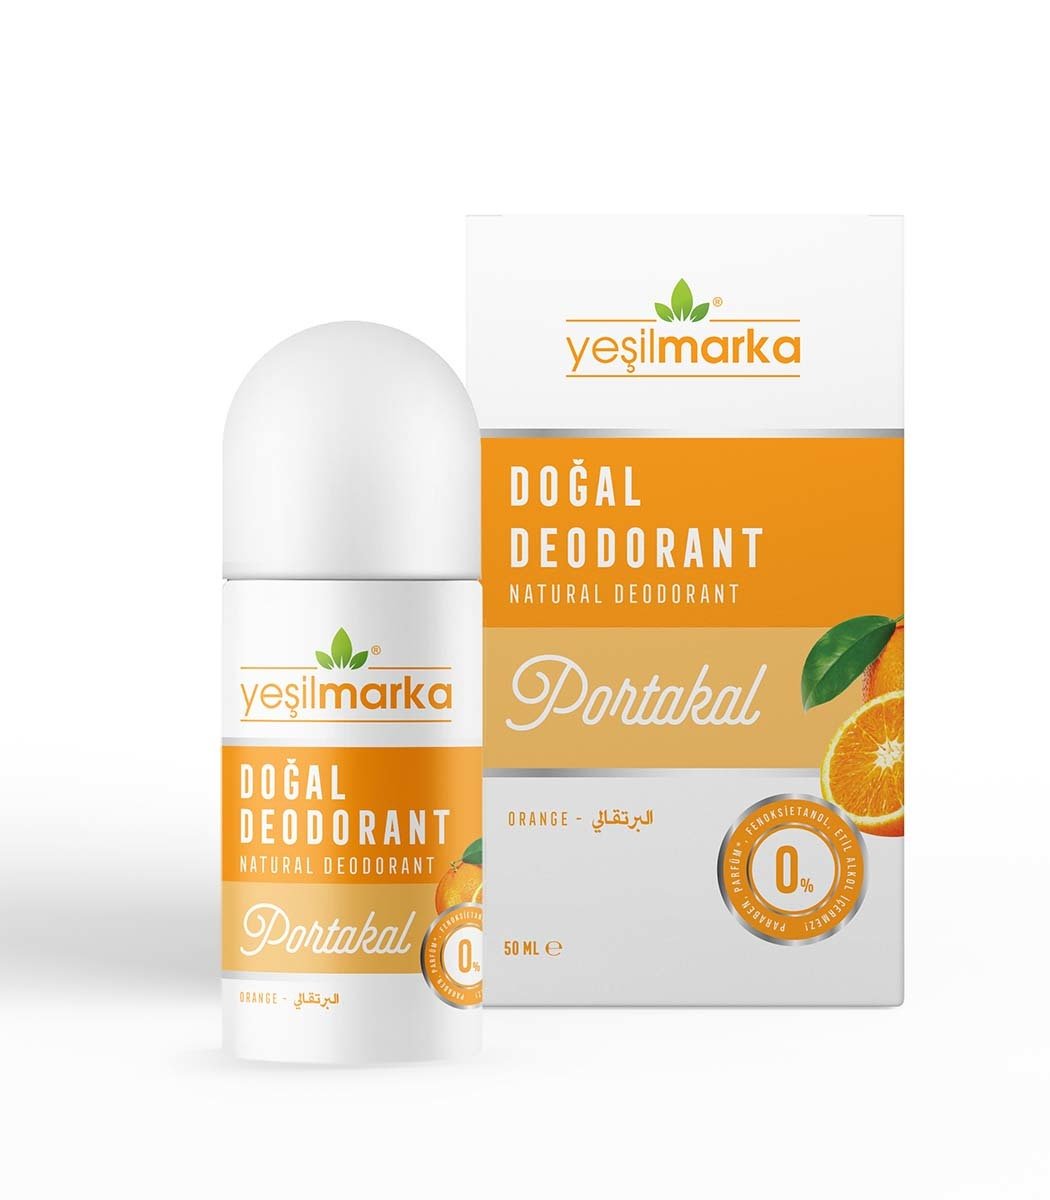 Yeşilmarka Doğal Deodorant – Portakal Kokulu 50ML